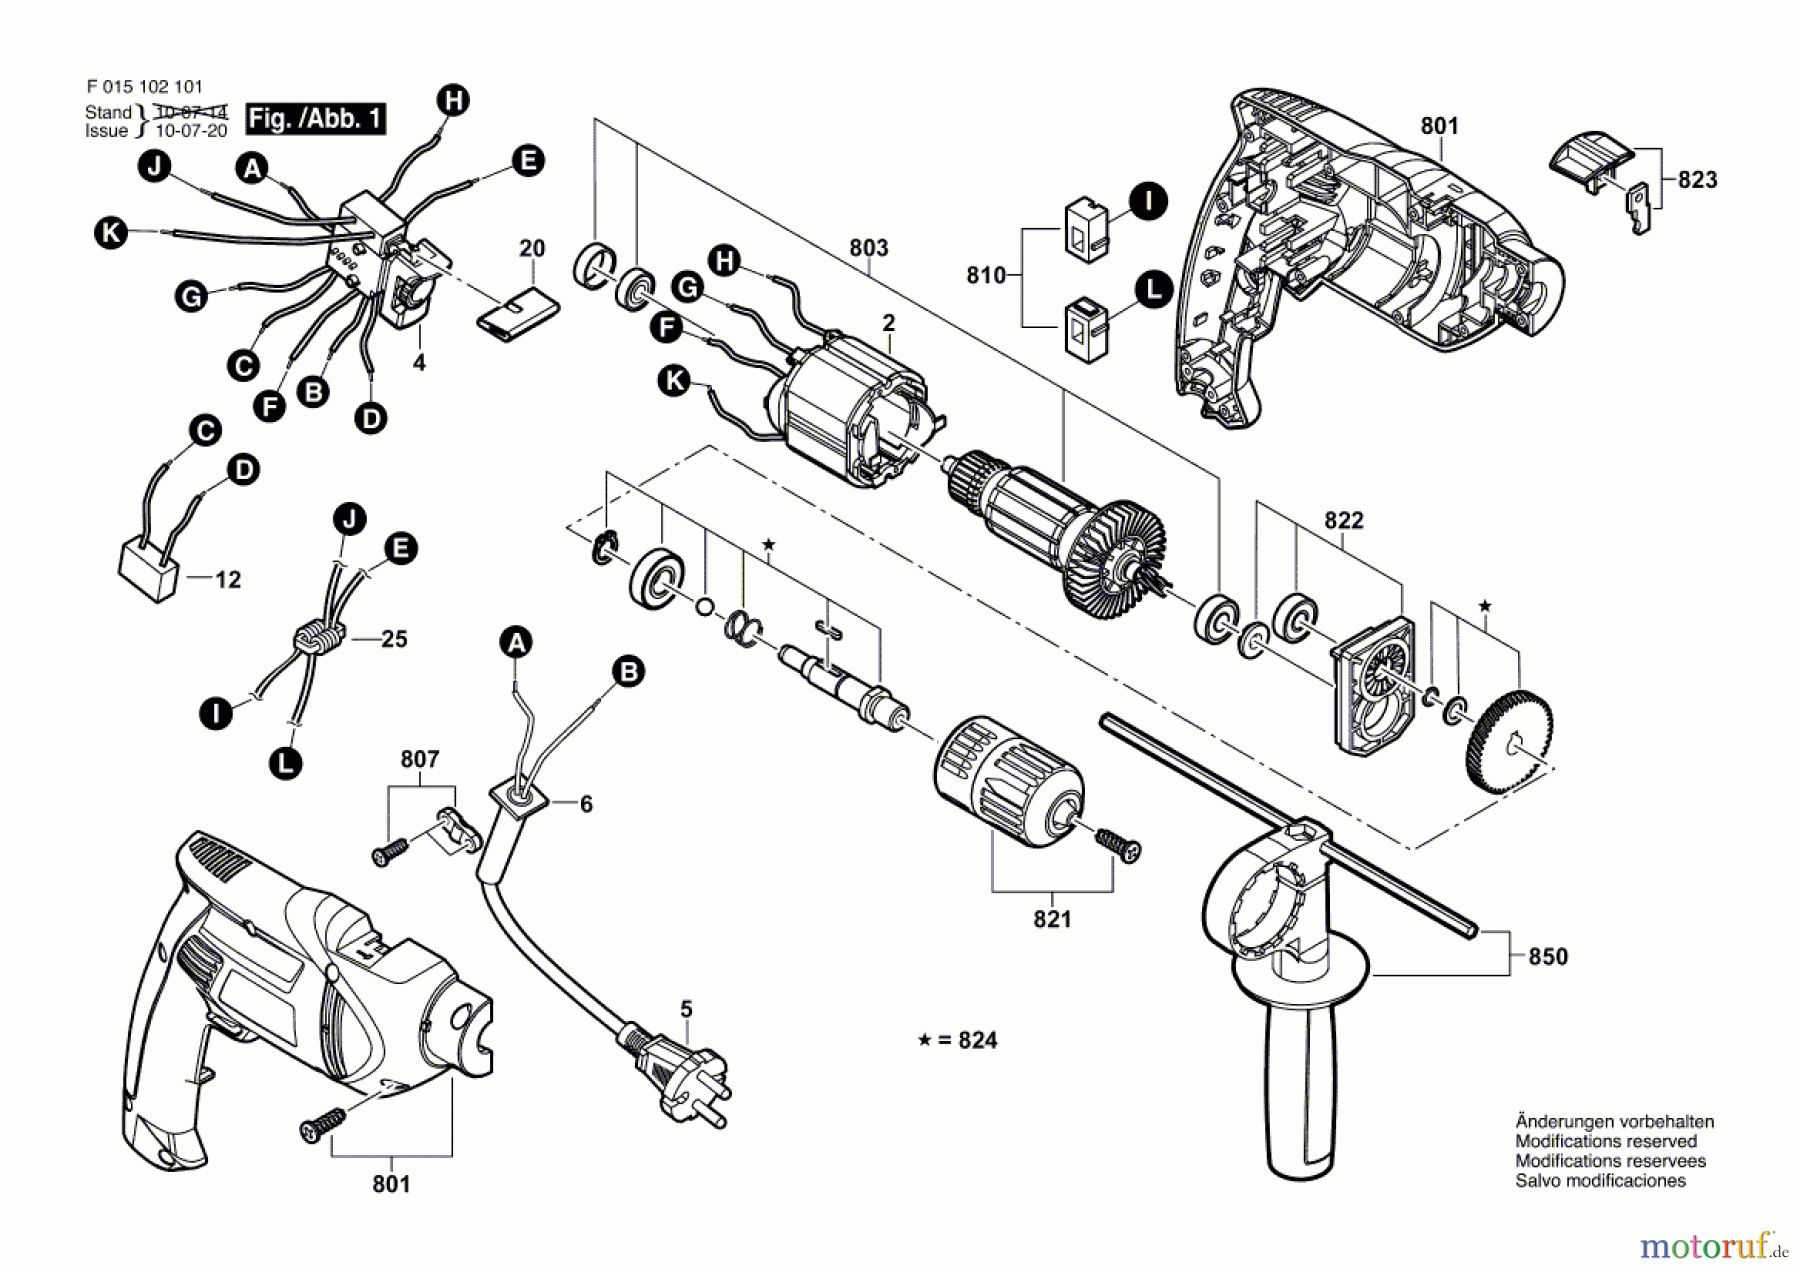  Bosch Werkzeug Schlagbohrmaschine 1021 Seite 1